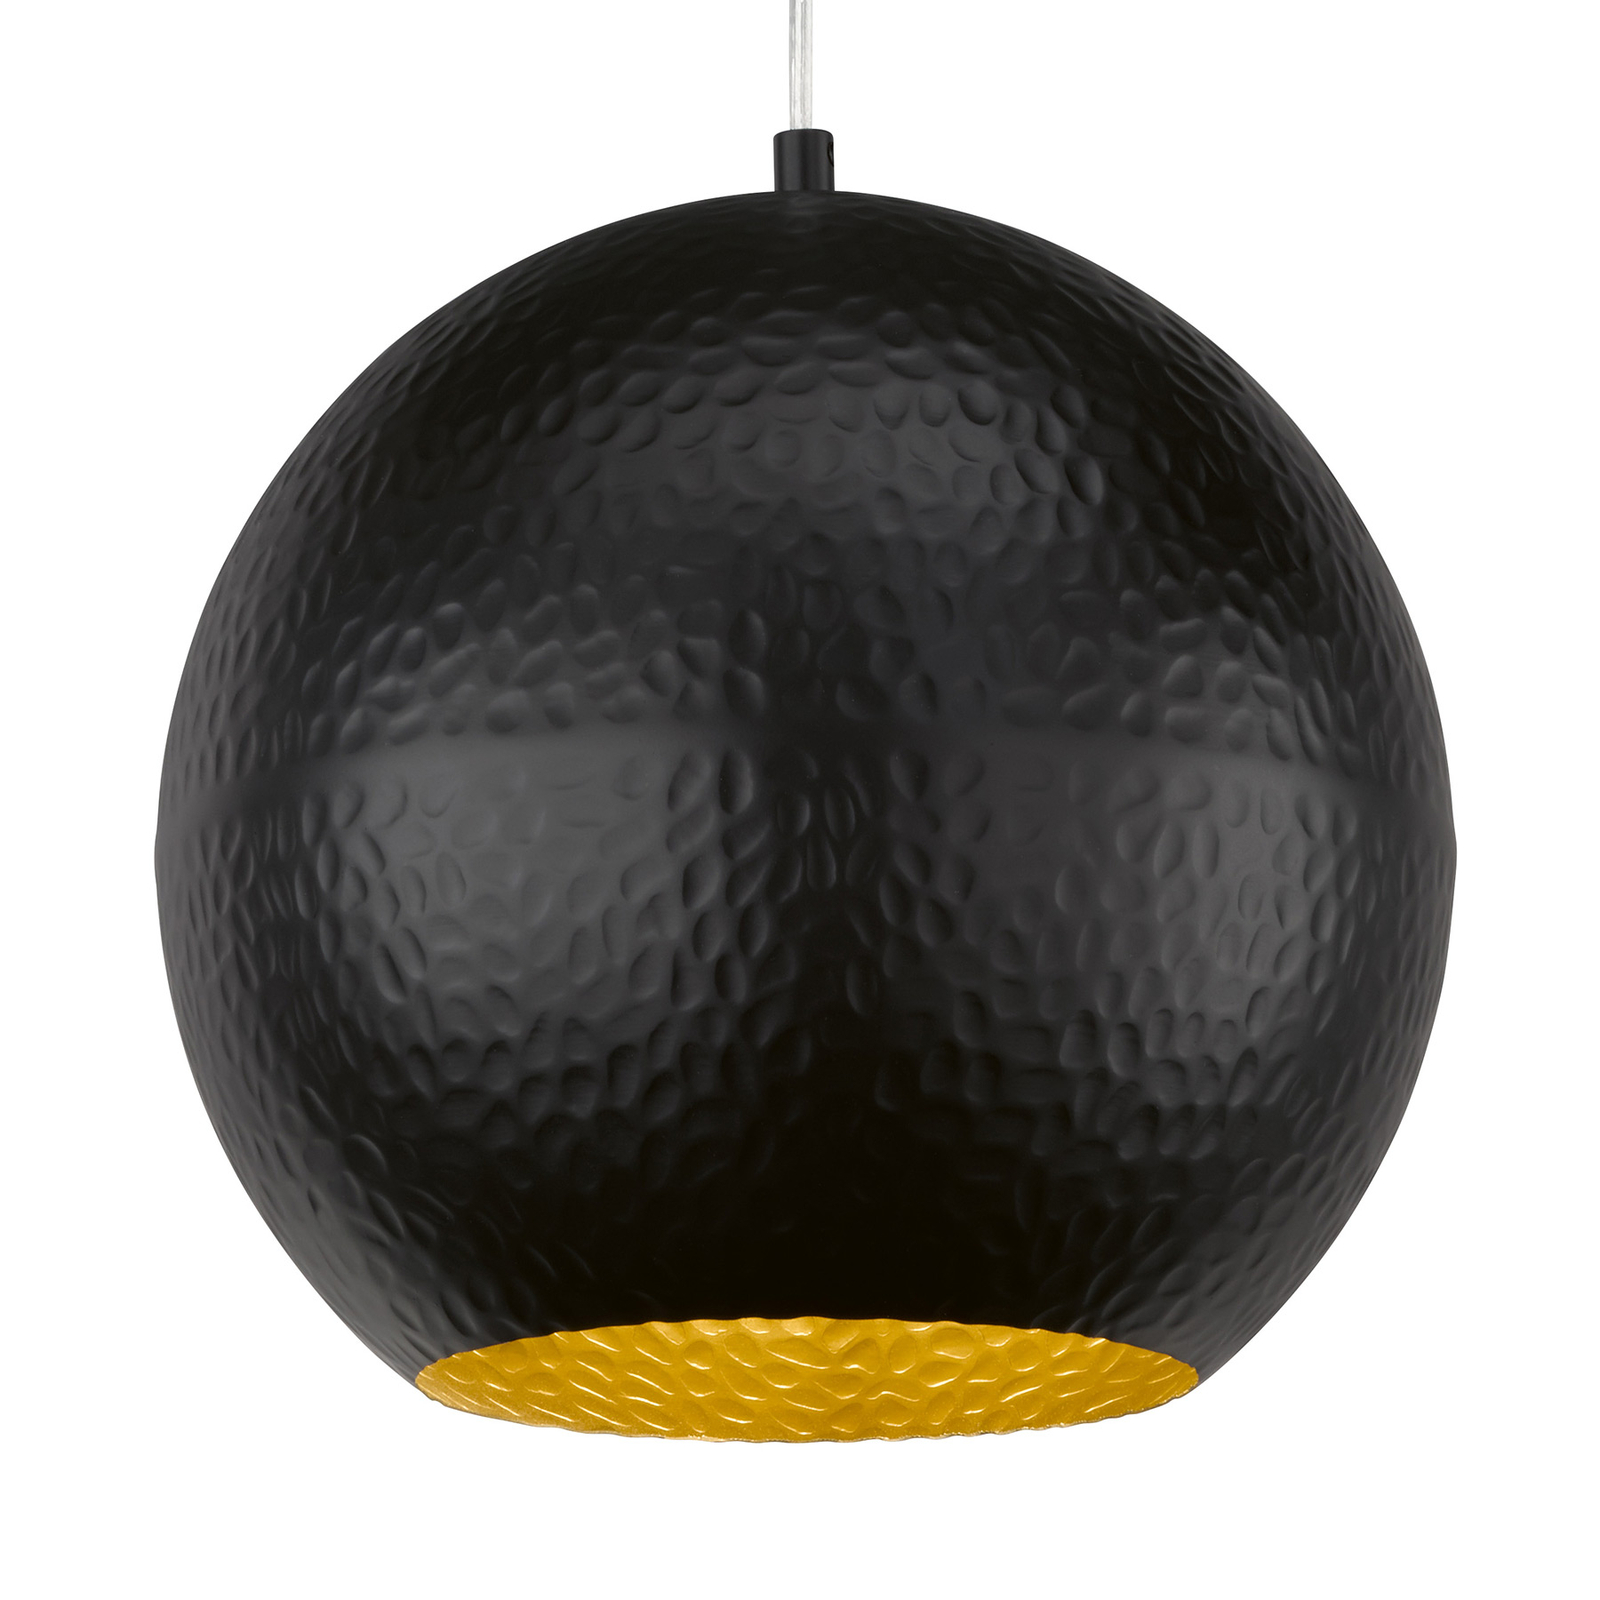 Hanglamp Mylon, zwart/goud, bolvormig